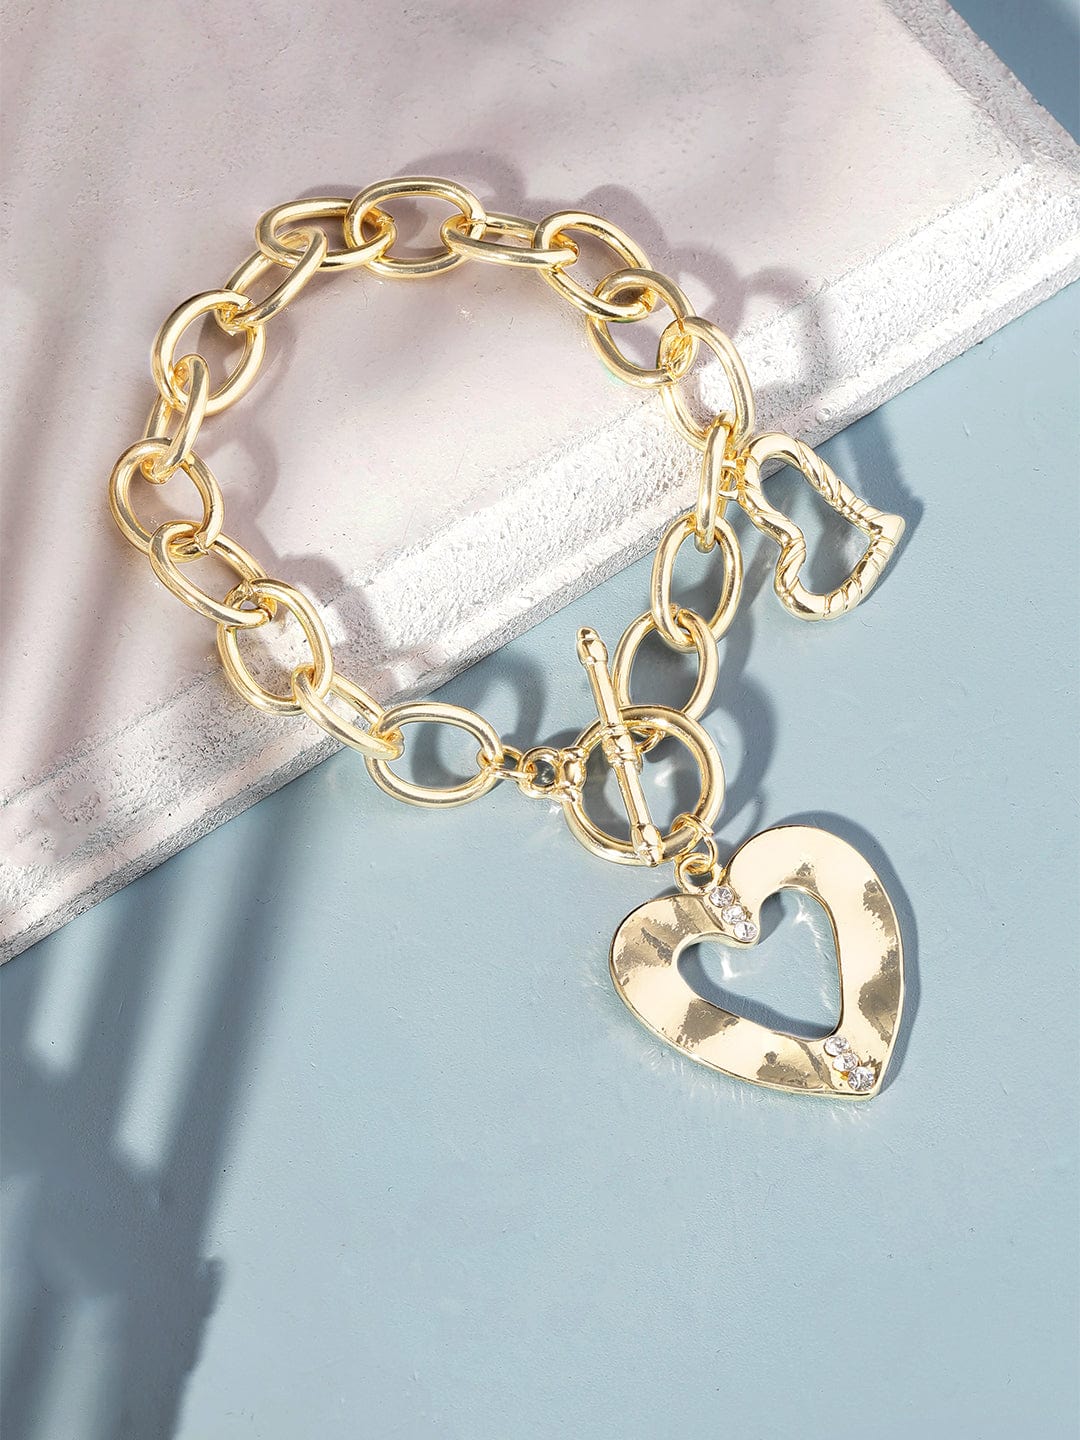 Carlton London Rose Gold Plated Charm Bracelet For Women – Carlton London  Online